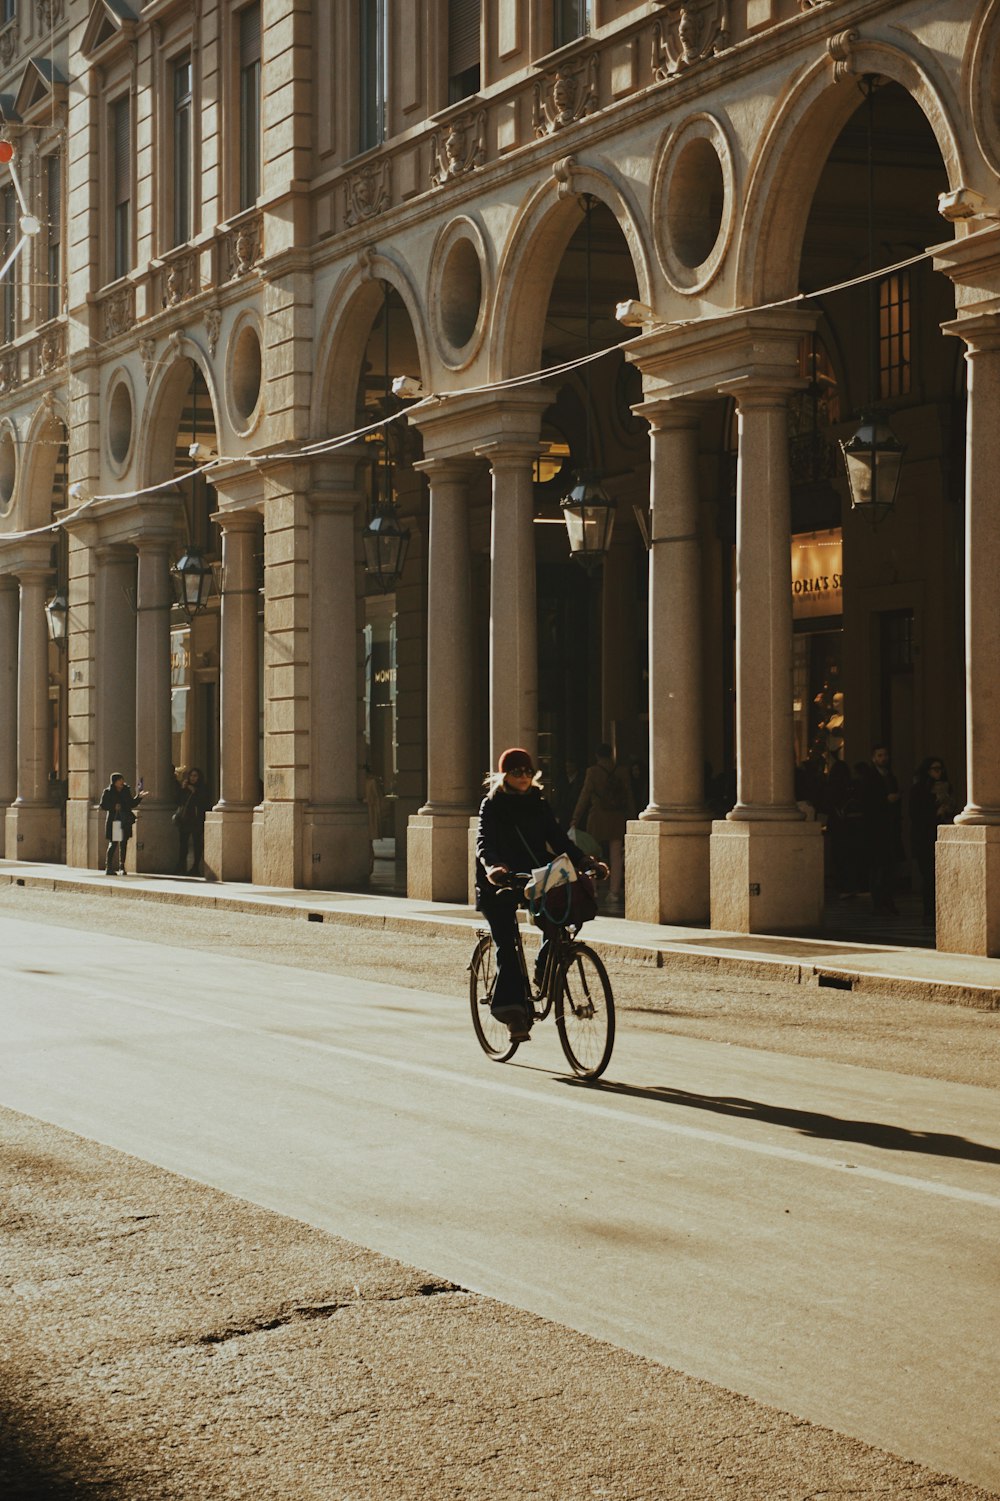 Un homme faisant du vélo dans une rue à côté de grands immeubles